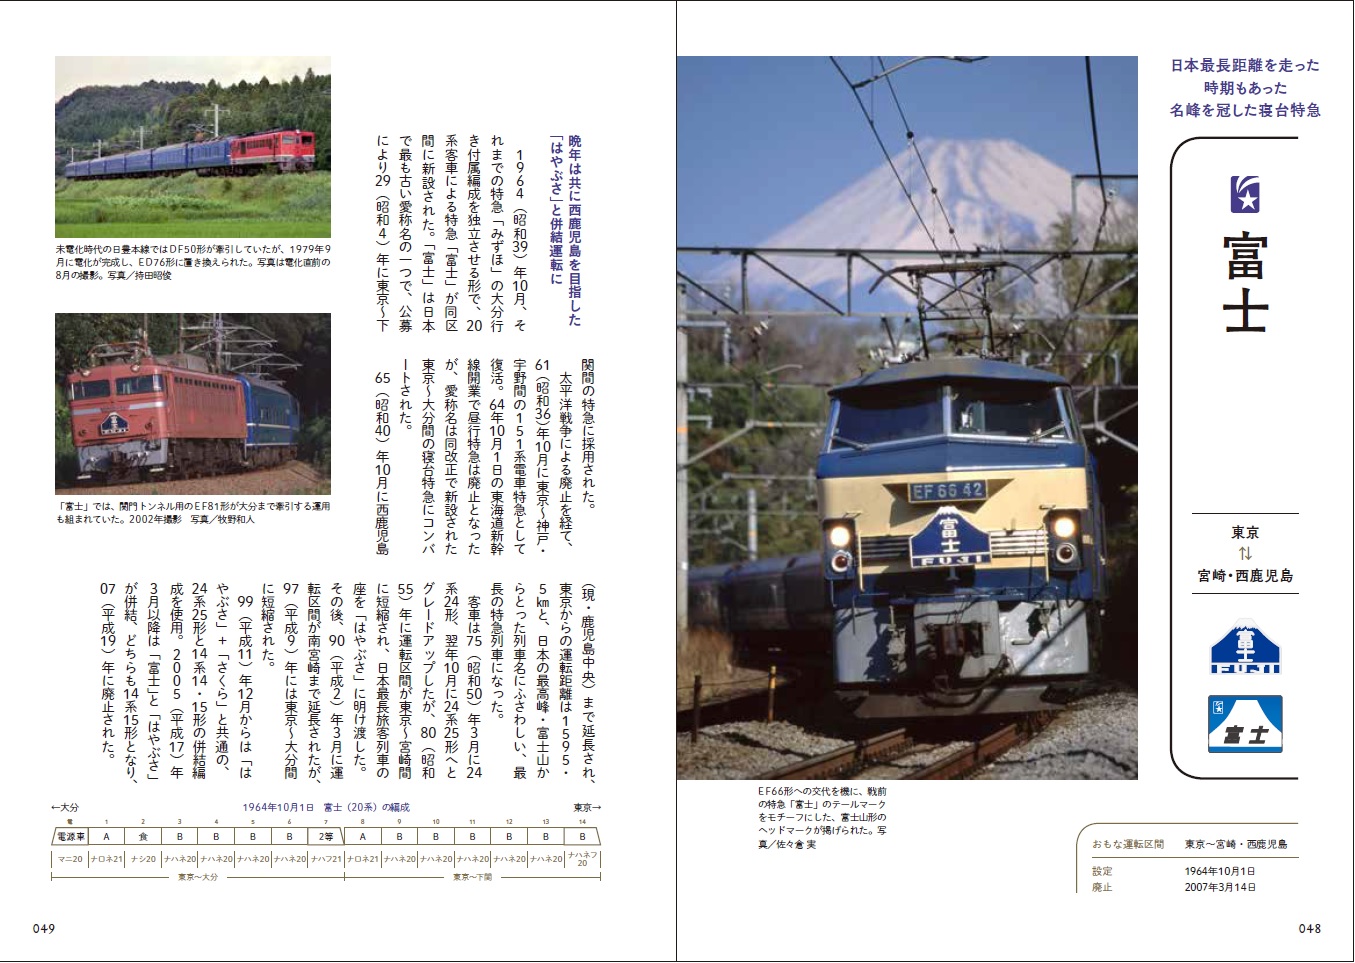 旅鉄BOOKS 018 ブルートレイン大図鑑 | 旅鉄web